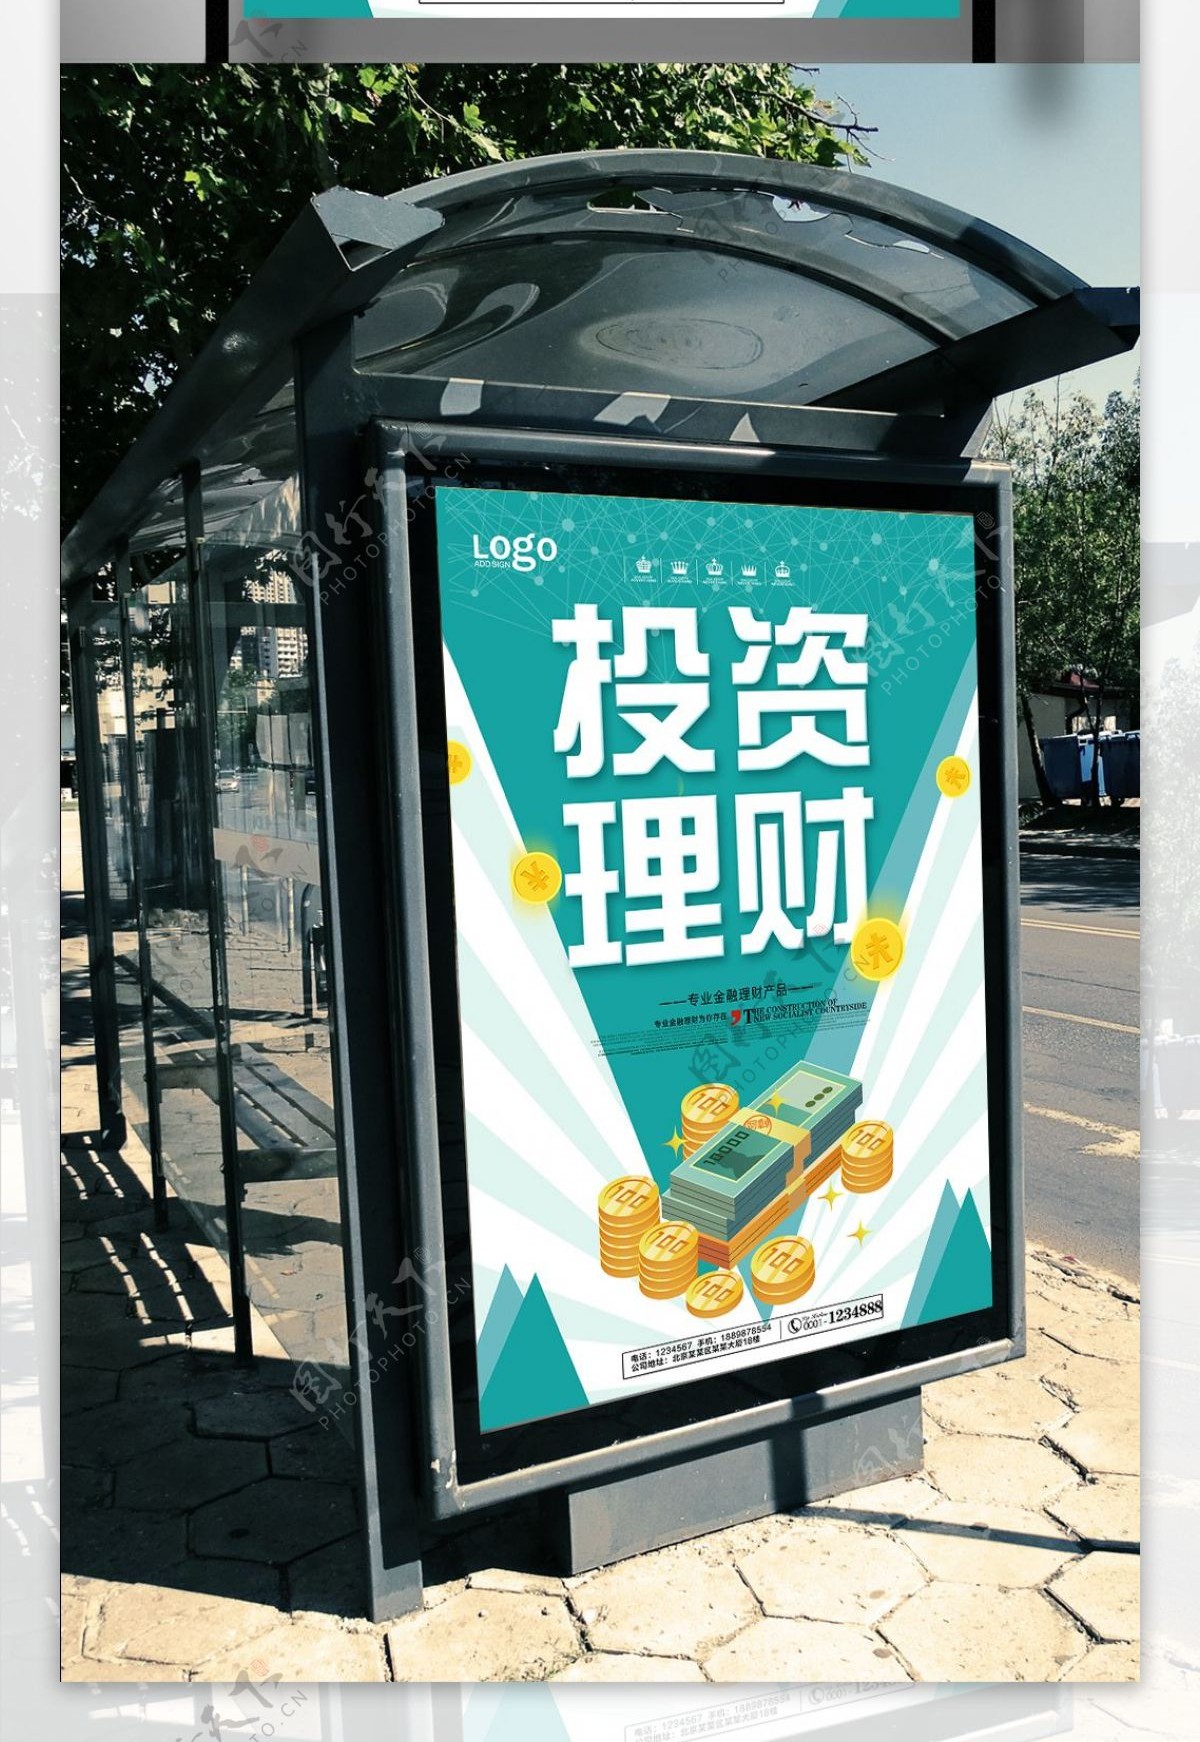 小清新投资理财宣传海报